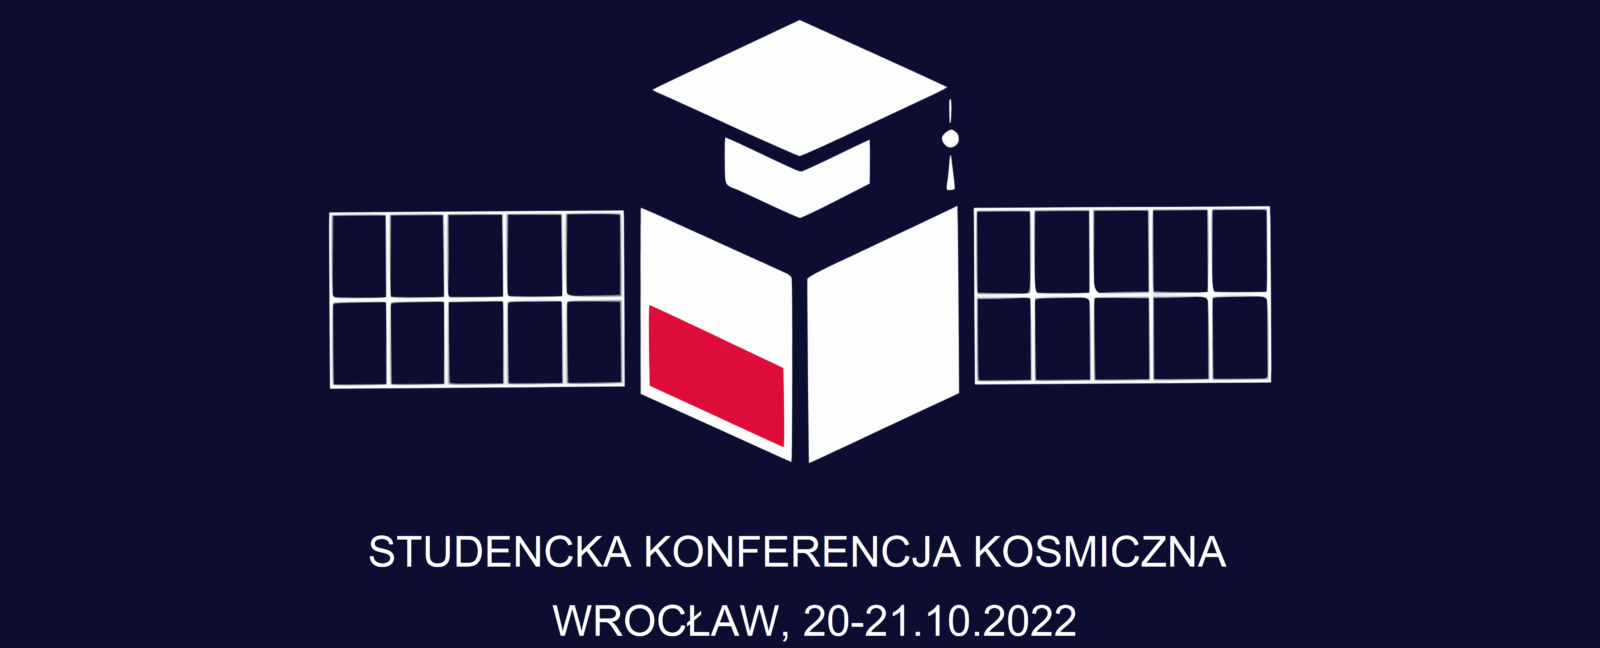 Studencka Konferencja Kosmiczna Wrocław 2022 coraz bliżej. Wciąż czekamy na zgłoszenia wystąpień